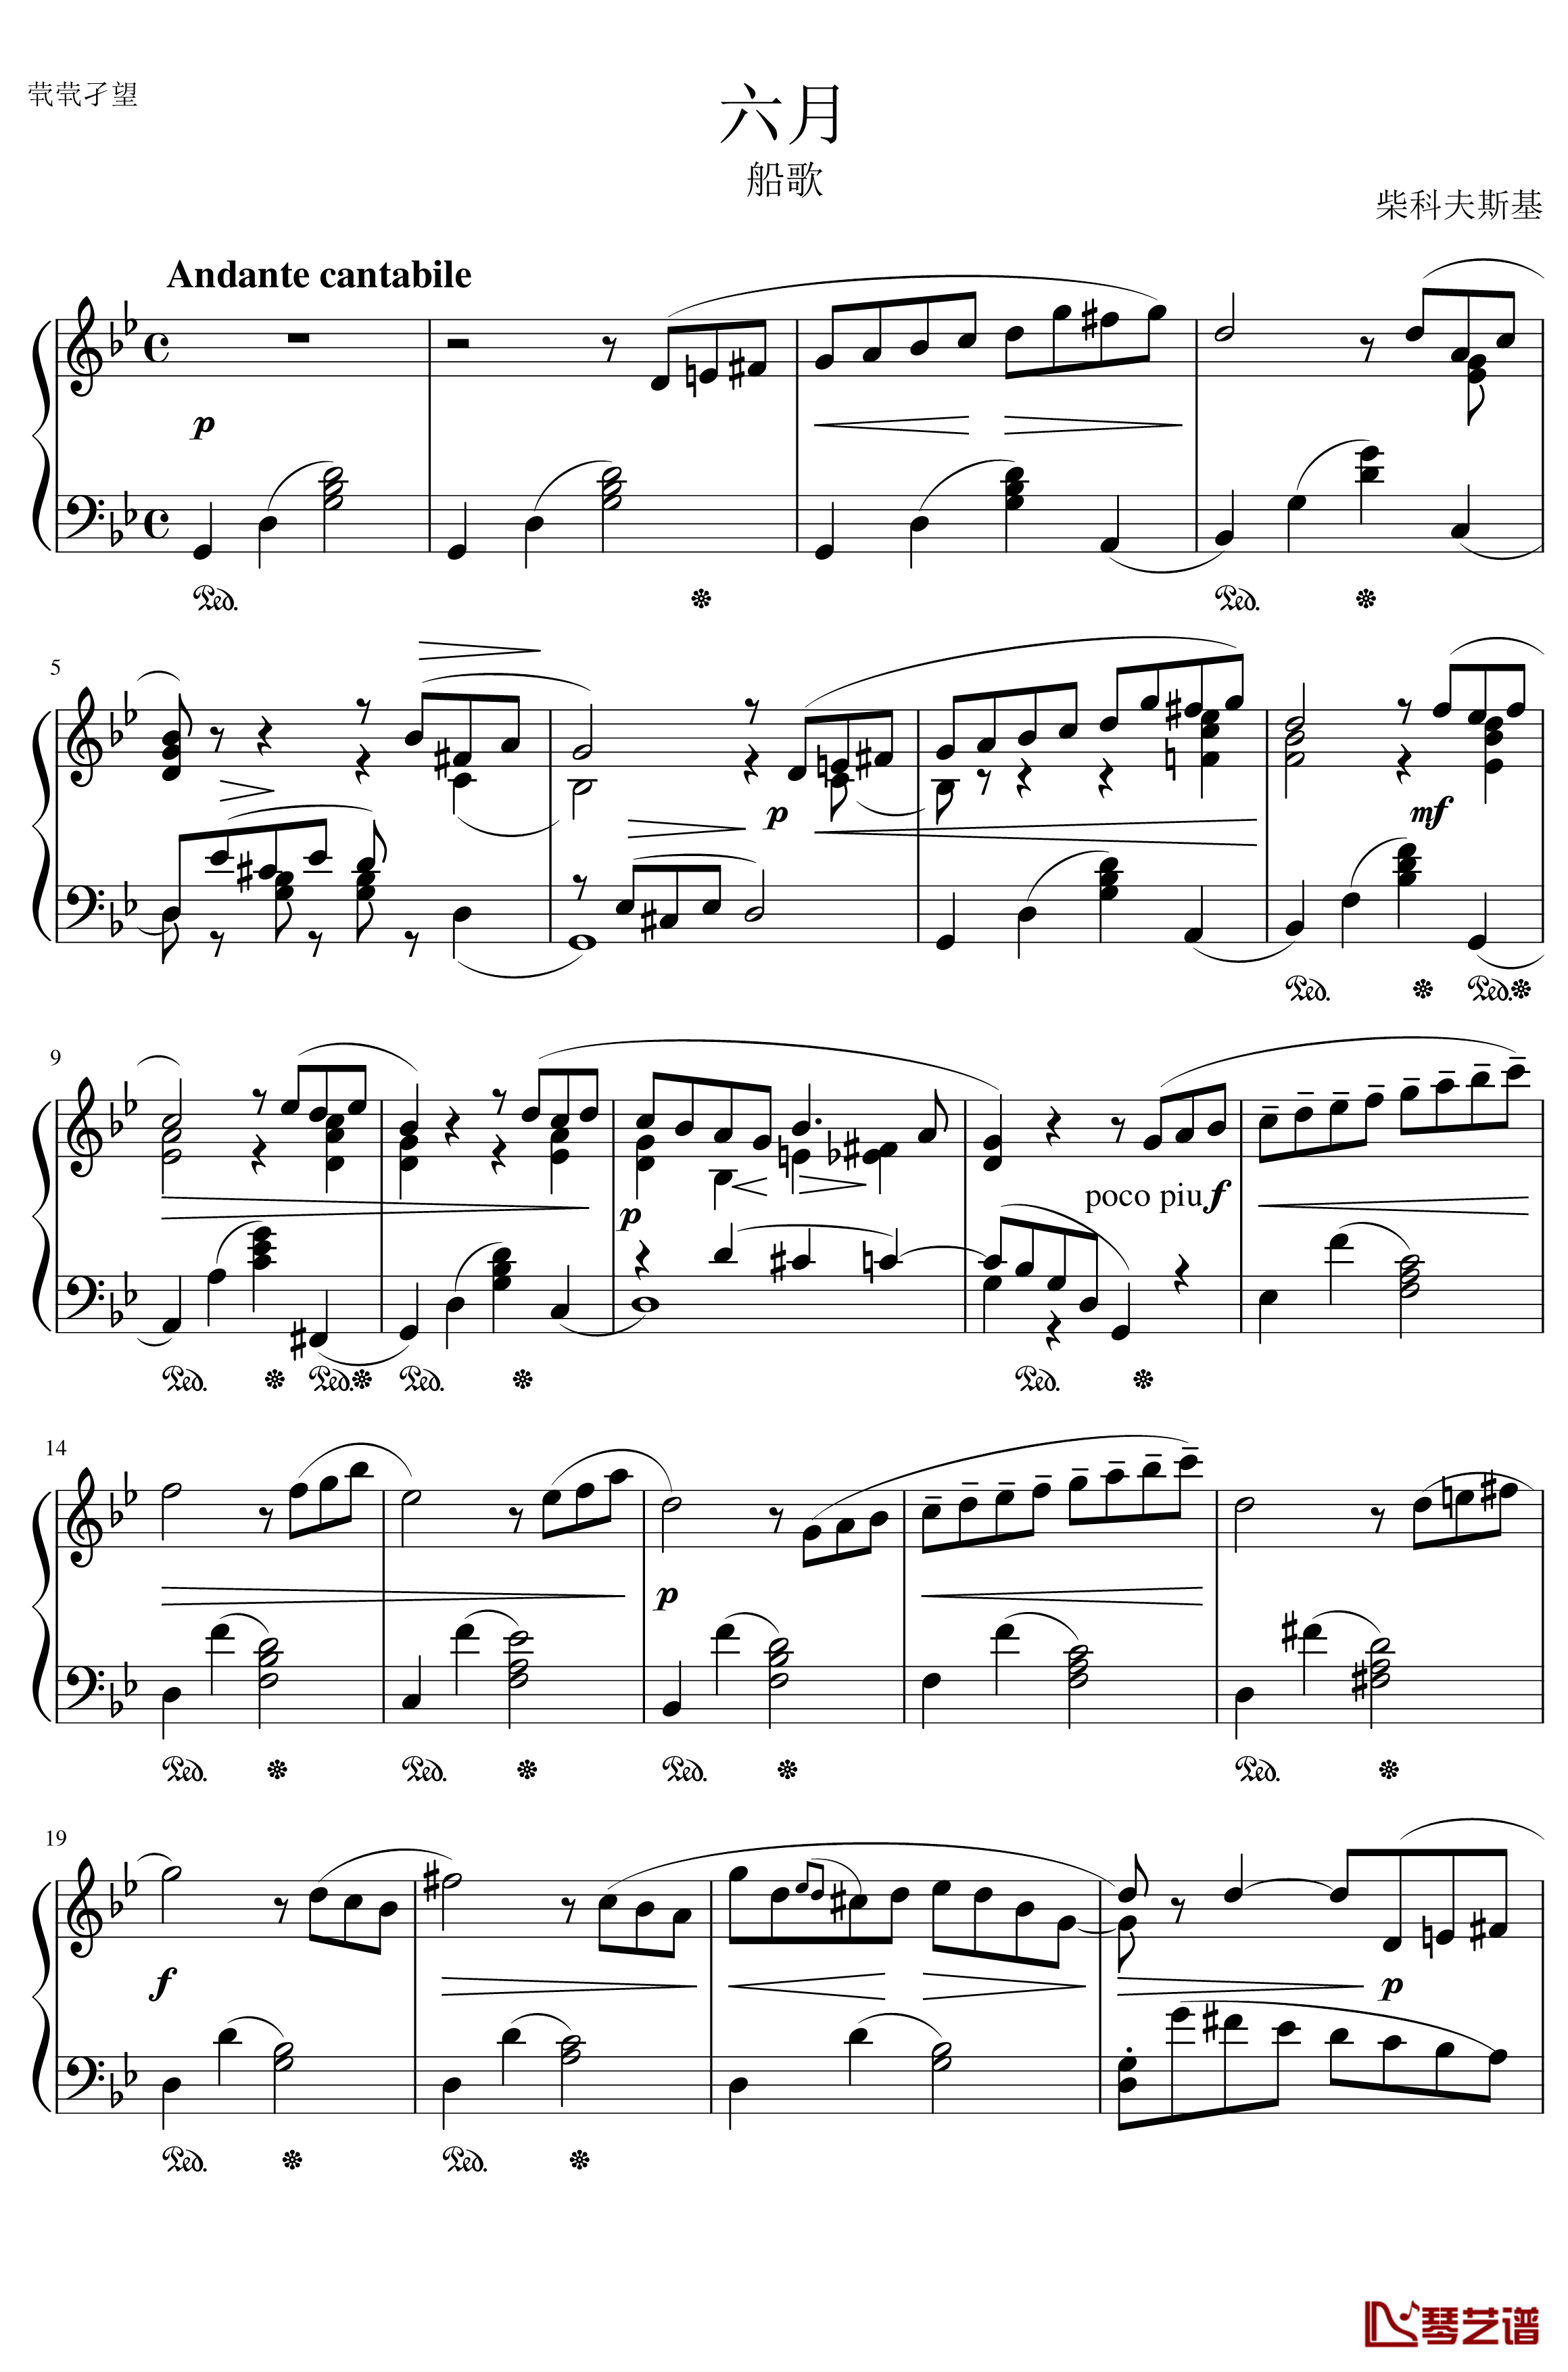 六月钢琴谱 船歌-The seasons,June: Barcarolle-柴科夫斯基-Peter Ilyich Tchaikovsky1